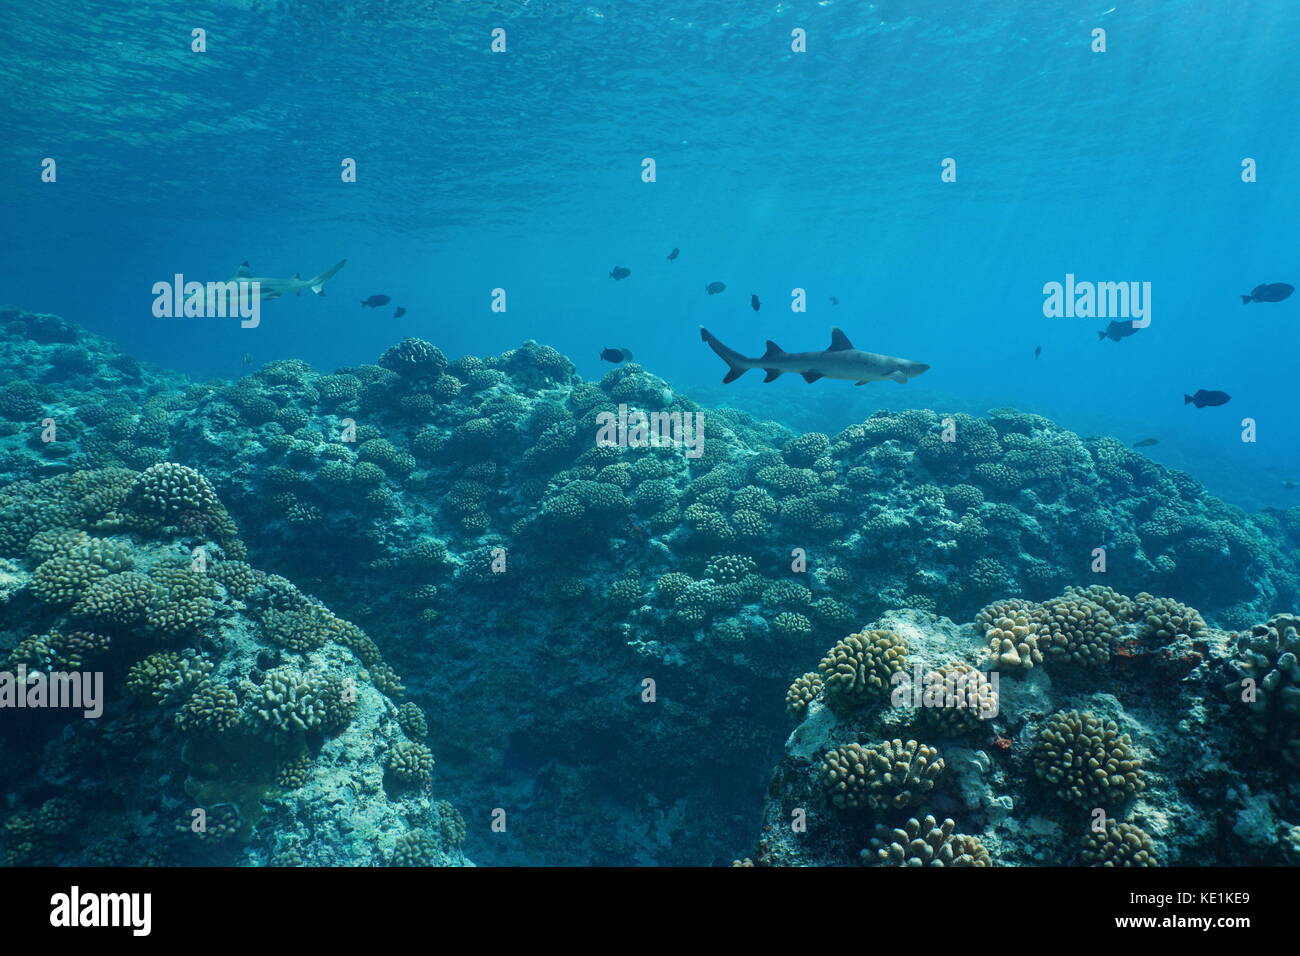 Paisaje submarino sea life en el exterior del arrecife de coral de la isla de huahine, en el sur del océano Pacífico, la Polinesia francesa, Oceanía Foto de stock